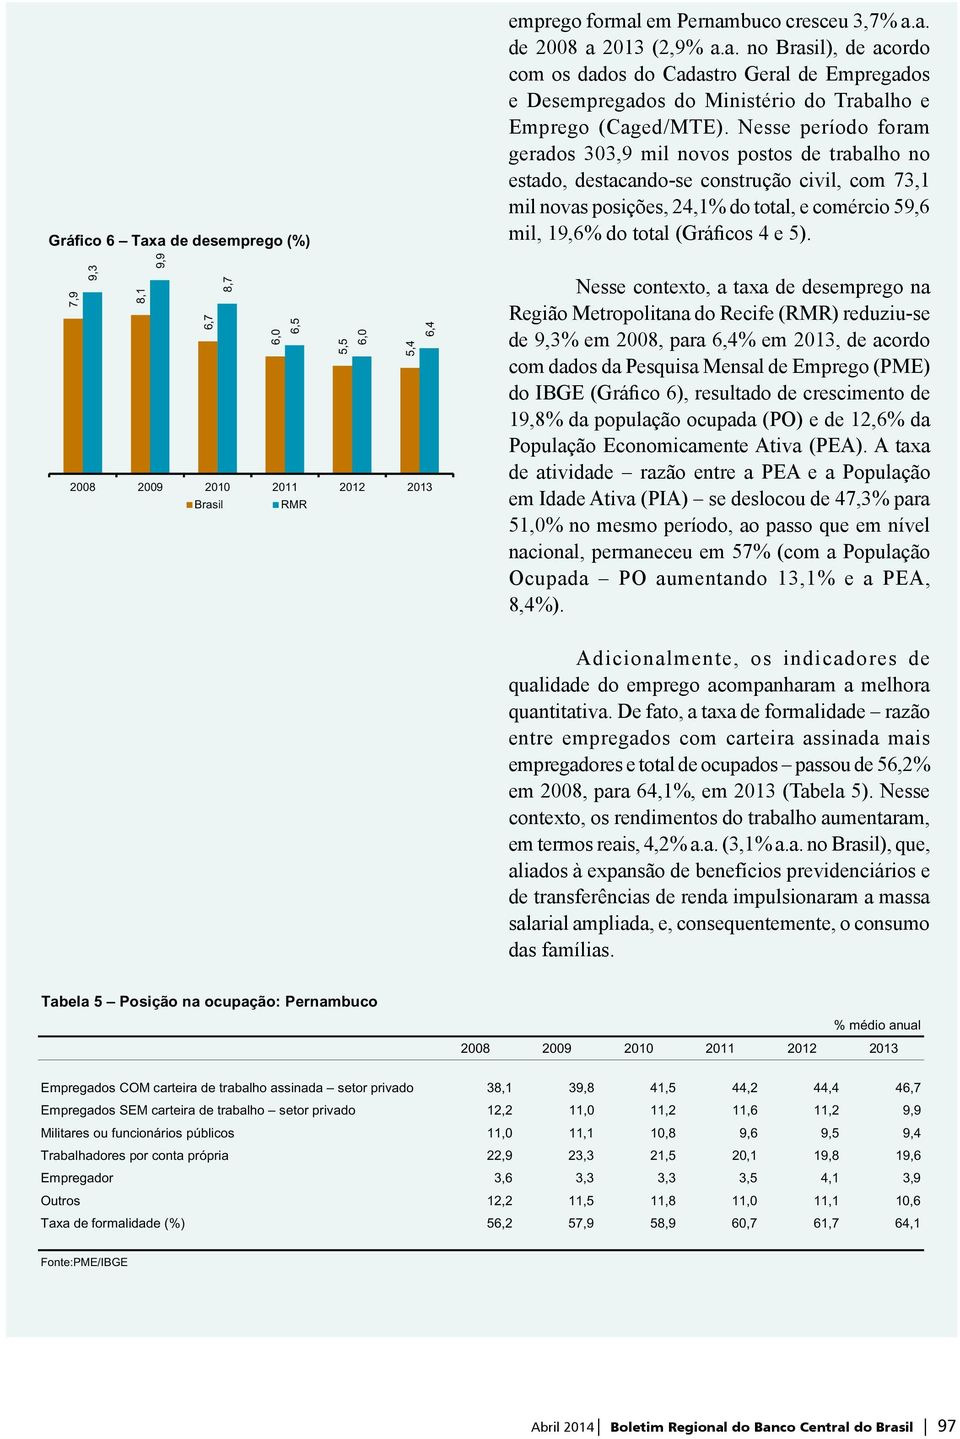 e 5). Nesse contexto, a taxa de desemprego na Região Metropolitana do Recife (RMR) reduziu-se de 9,3% em 2008, para 6,4% em 2013, de acordo com dados da Pesquisa Mensal de Emprego (PME) do IBGE